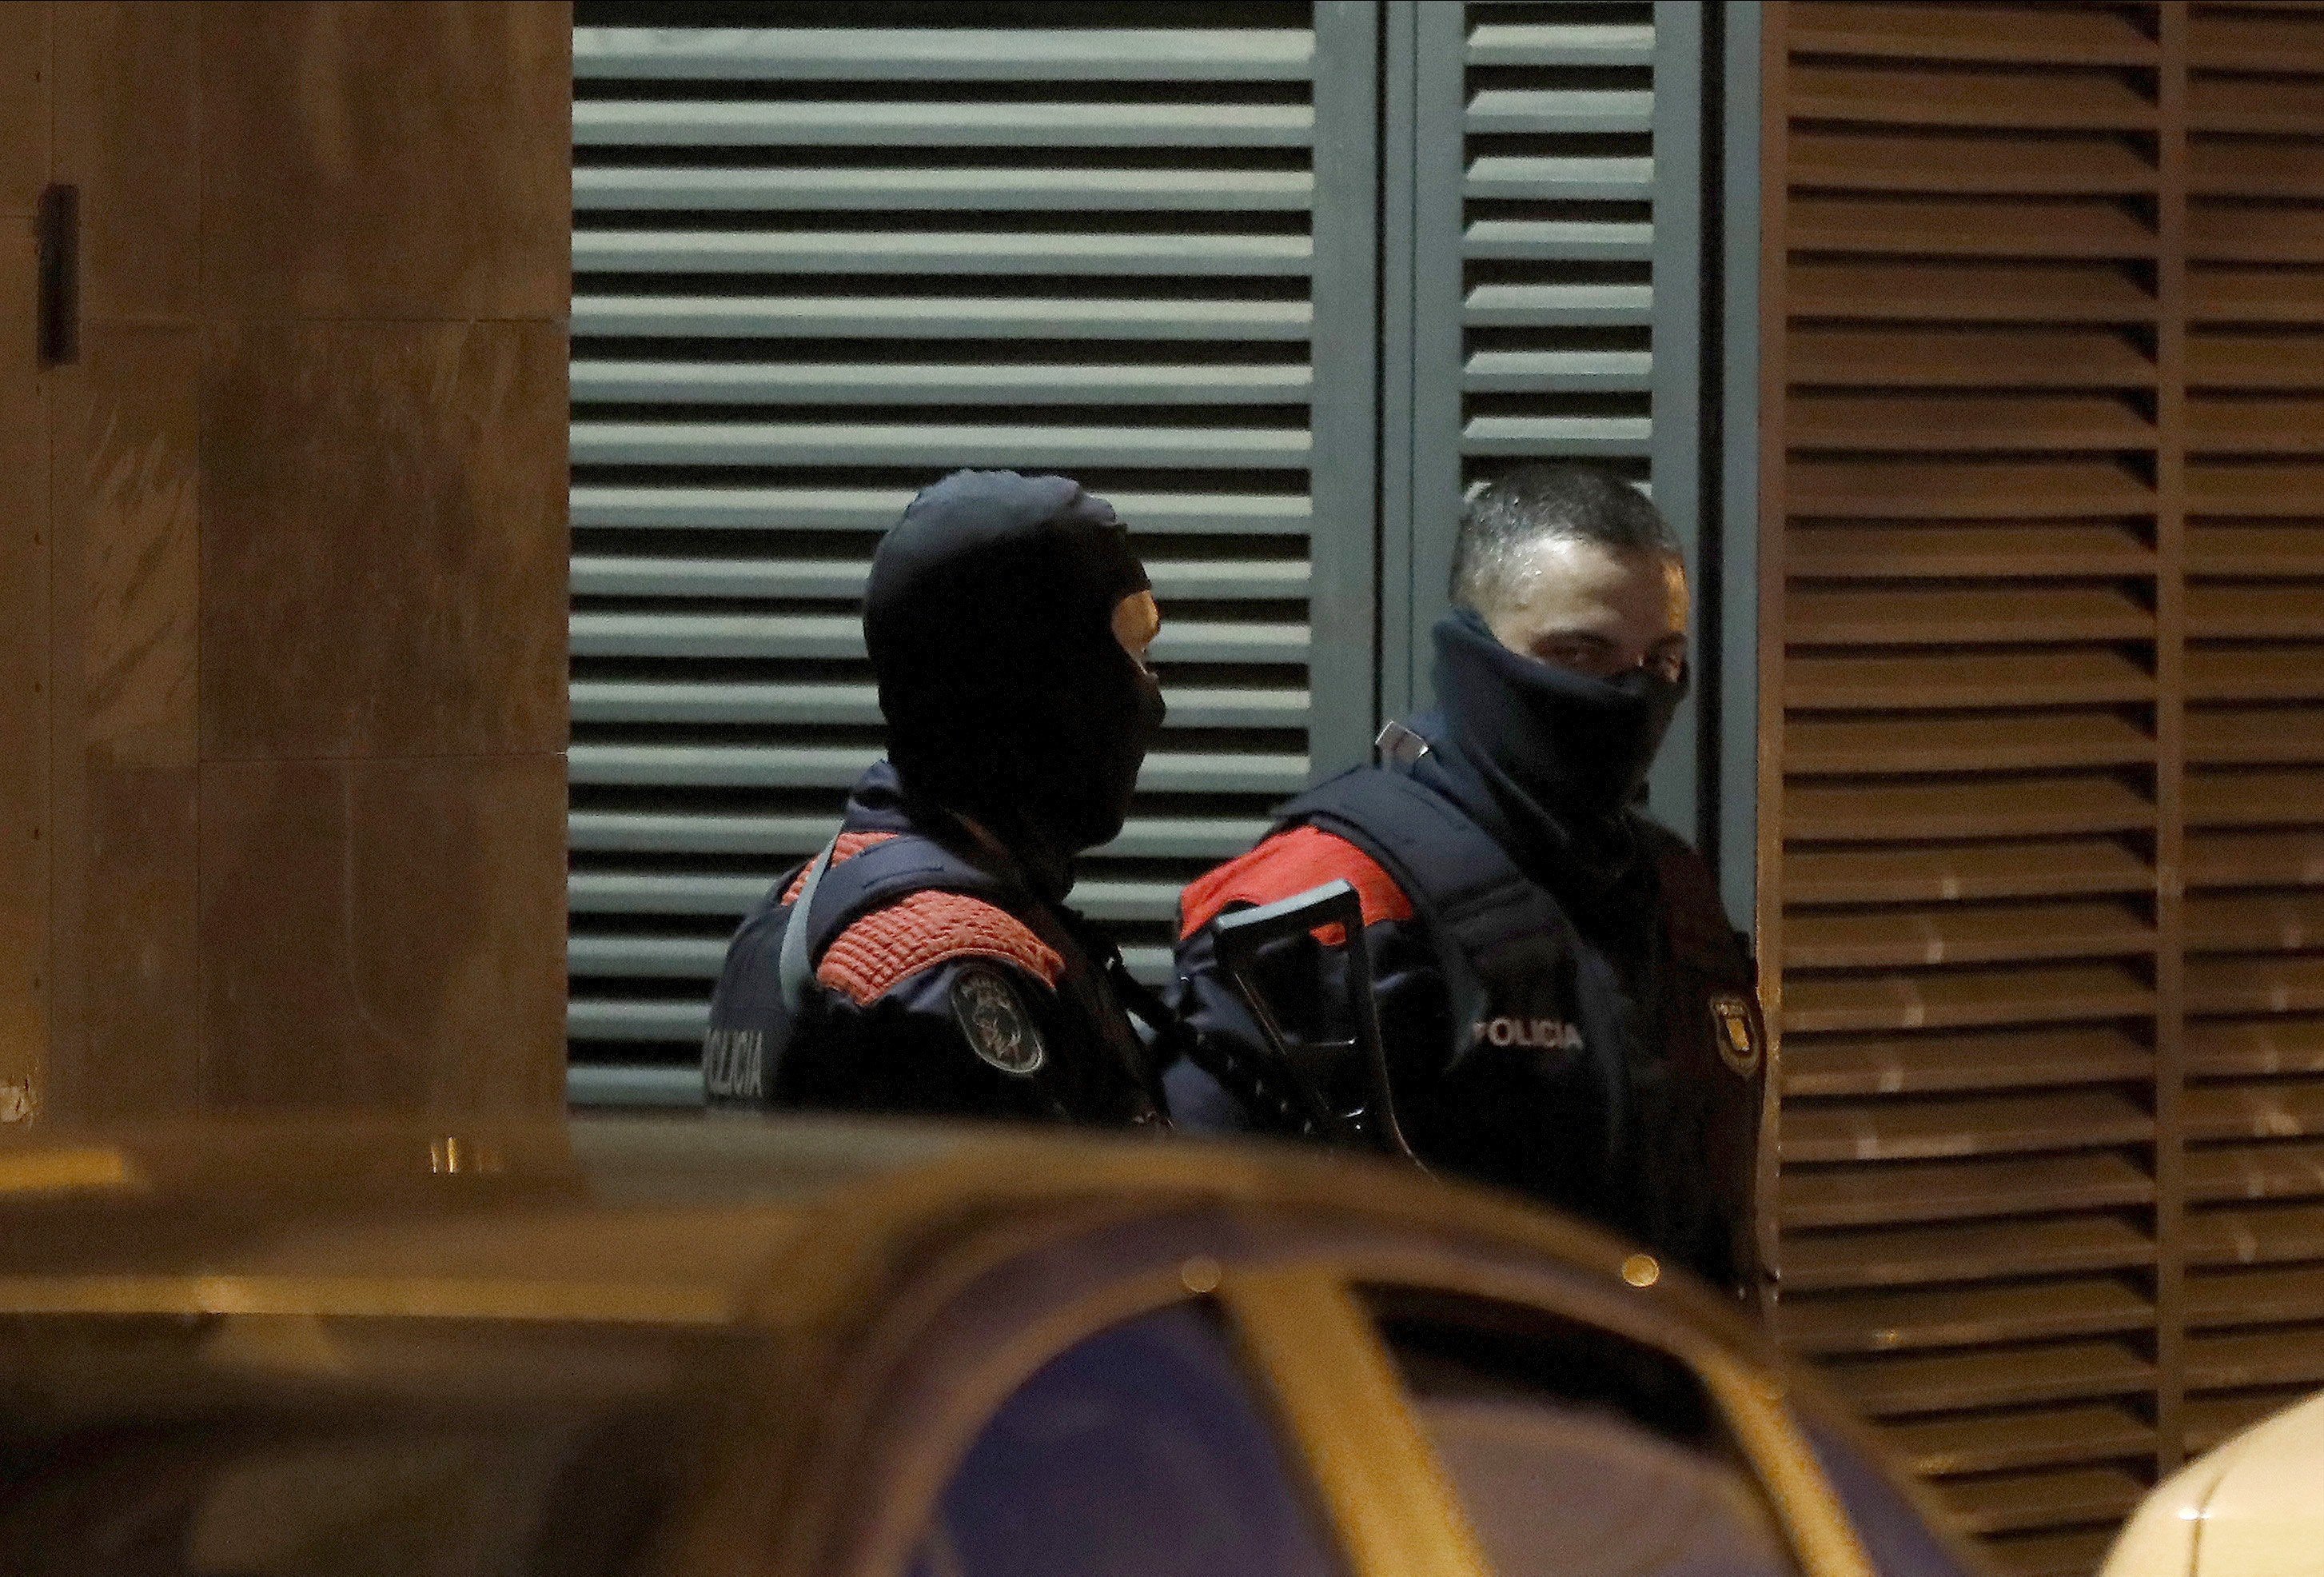 Desarticulat a Barcelona un grup criminal especialitzat en robatoris violents